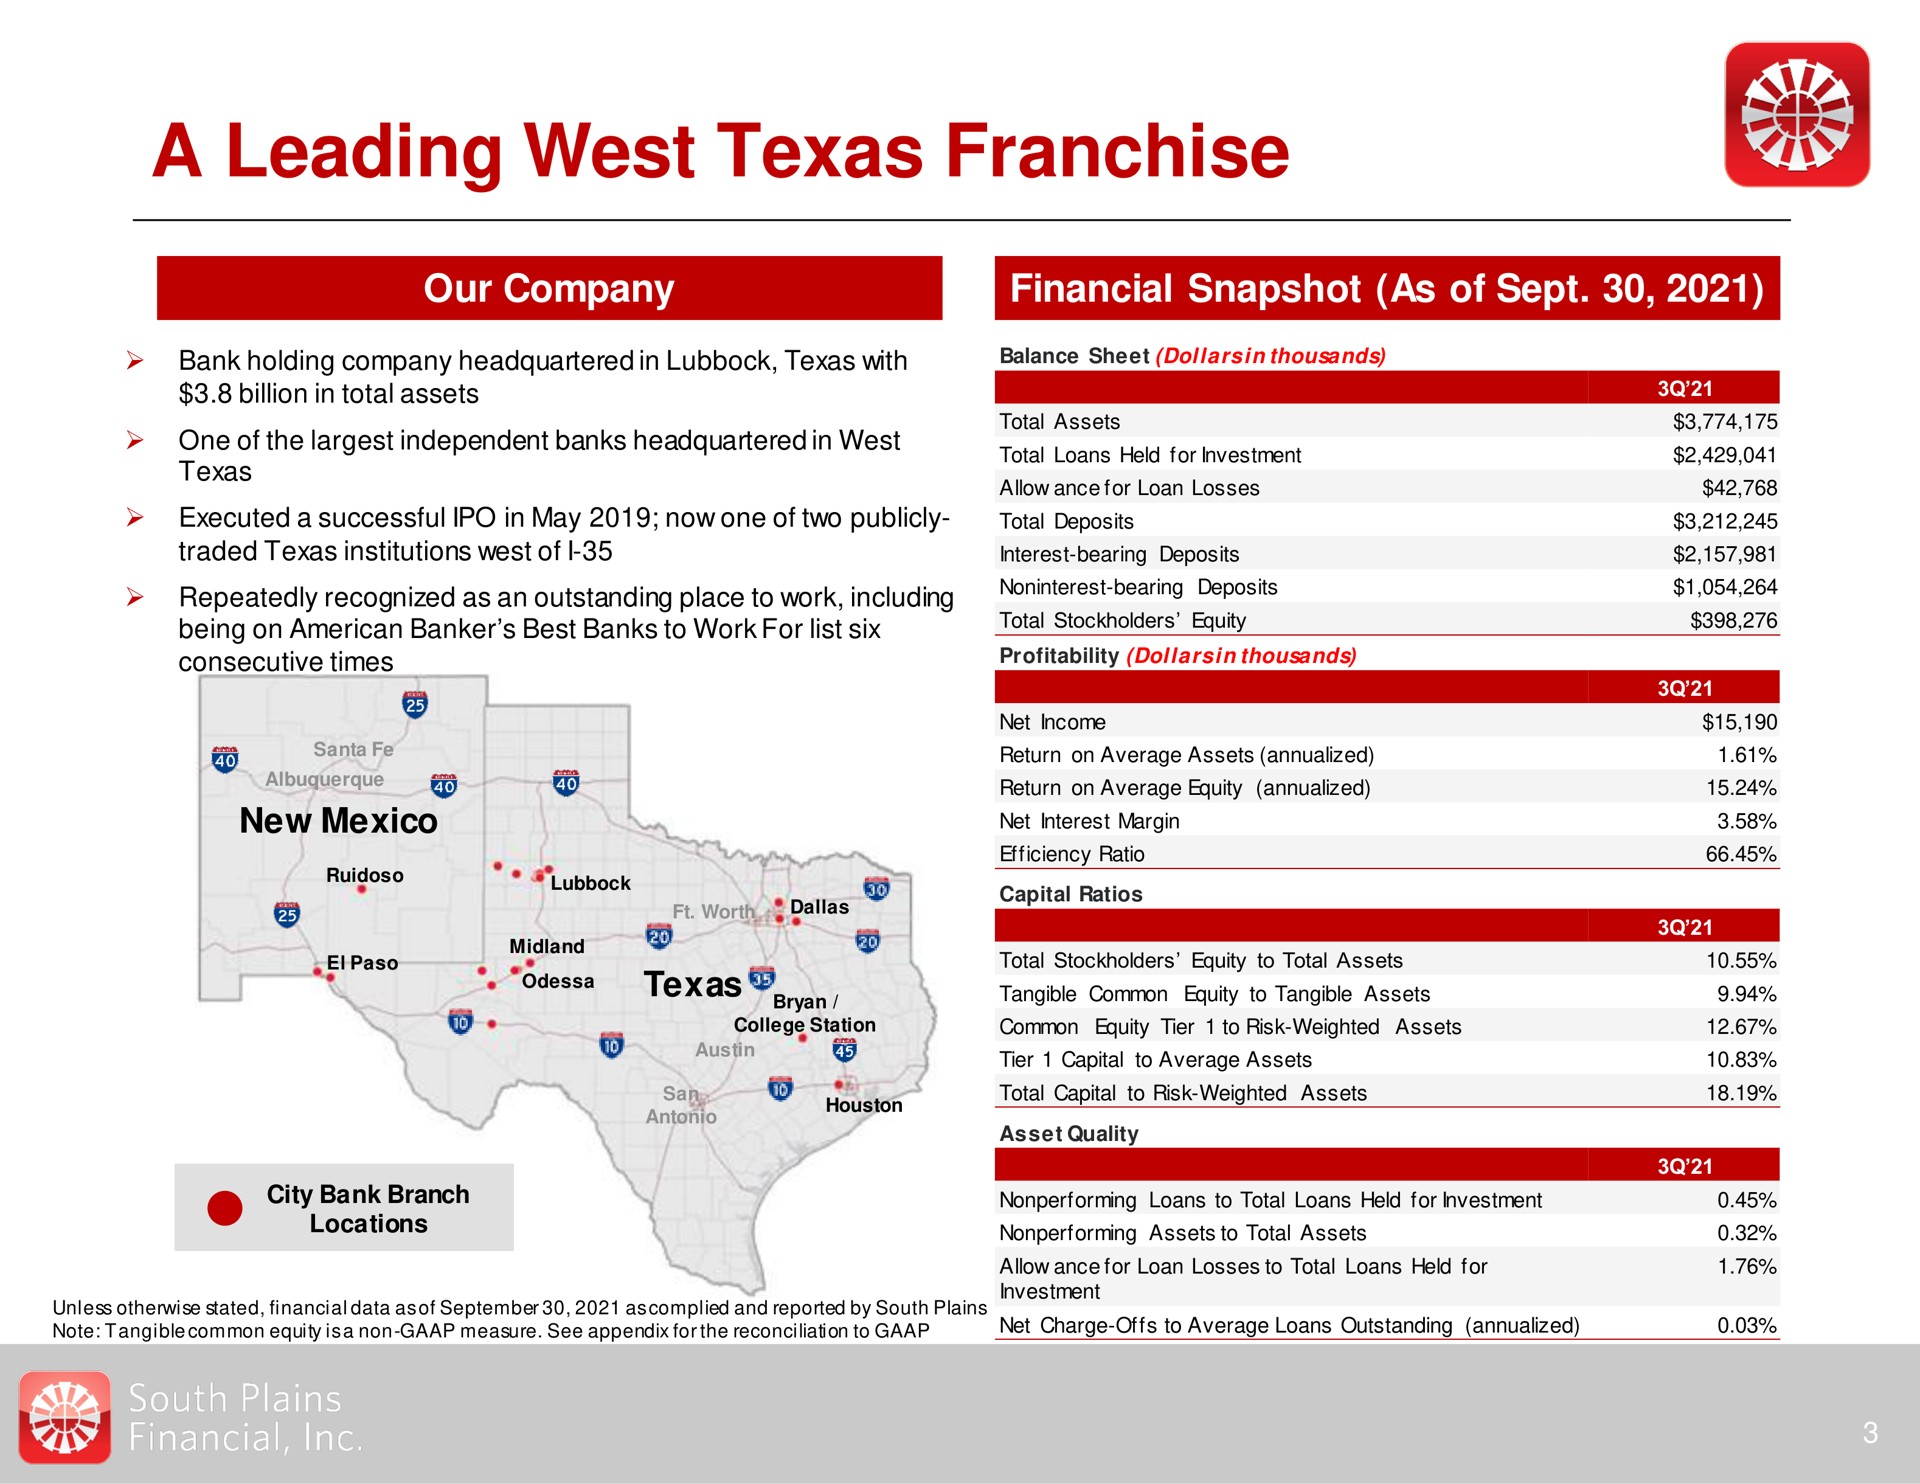 a leading west franchise | South Plains Financial